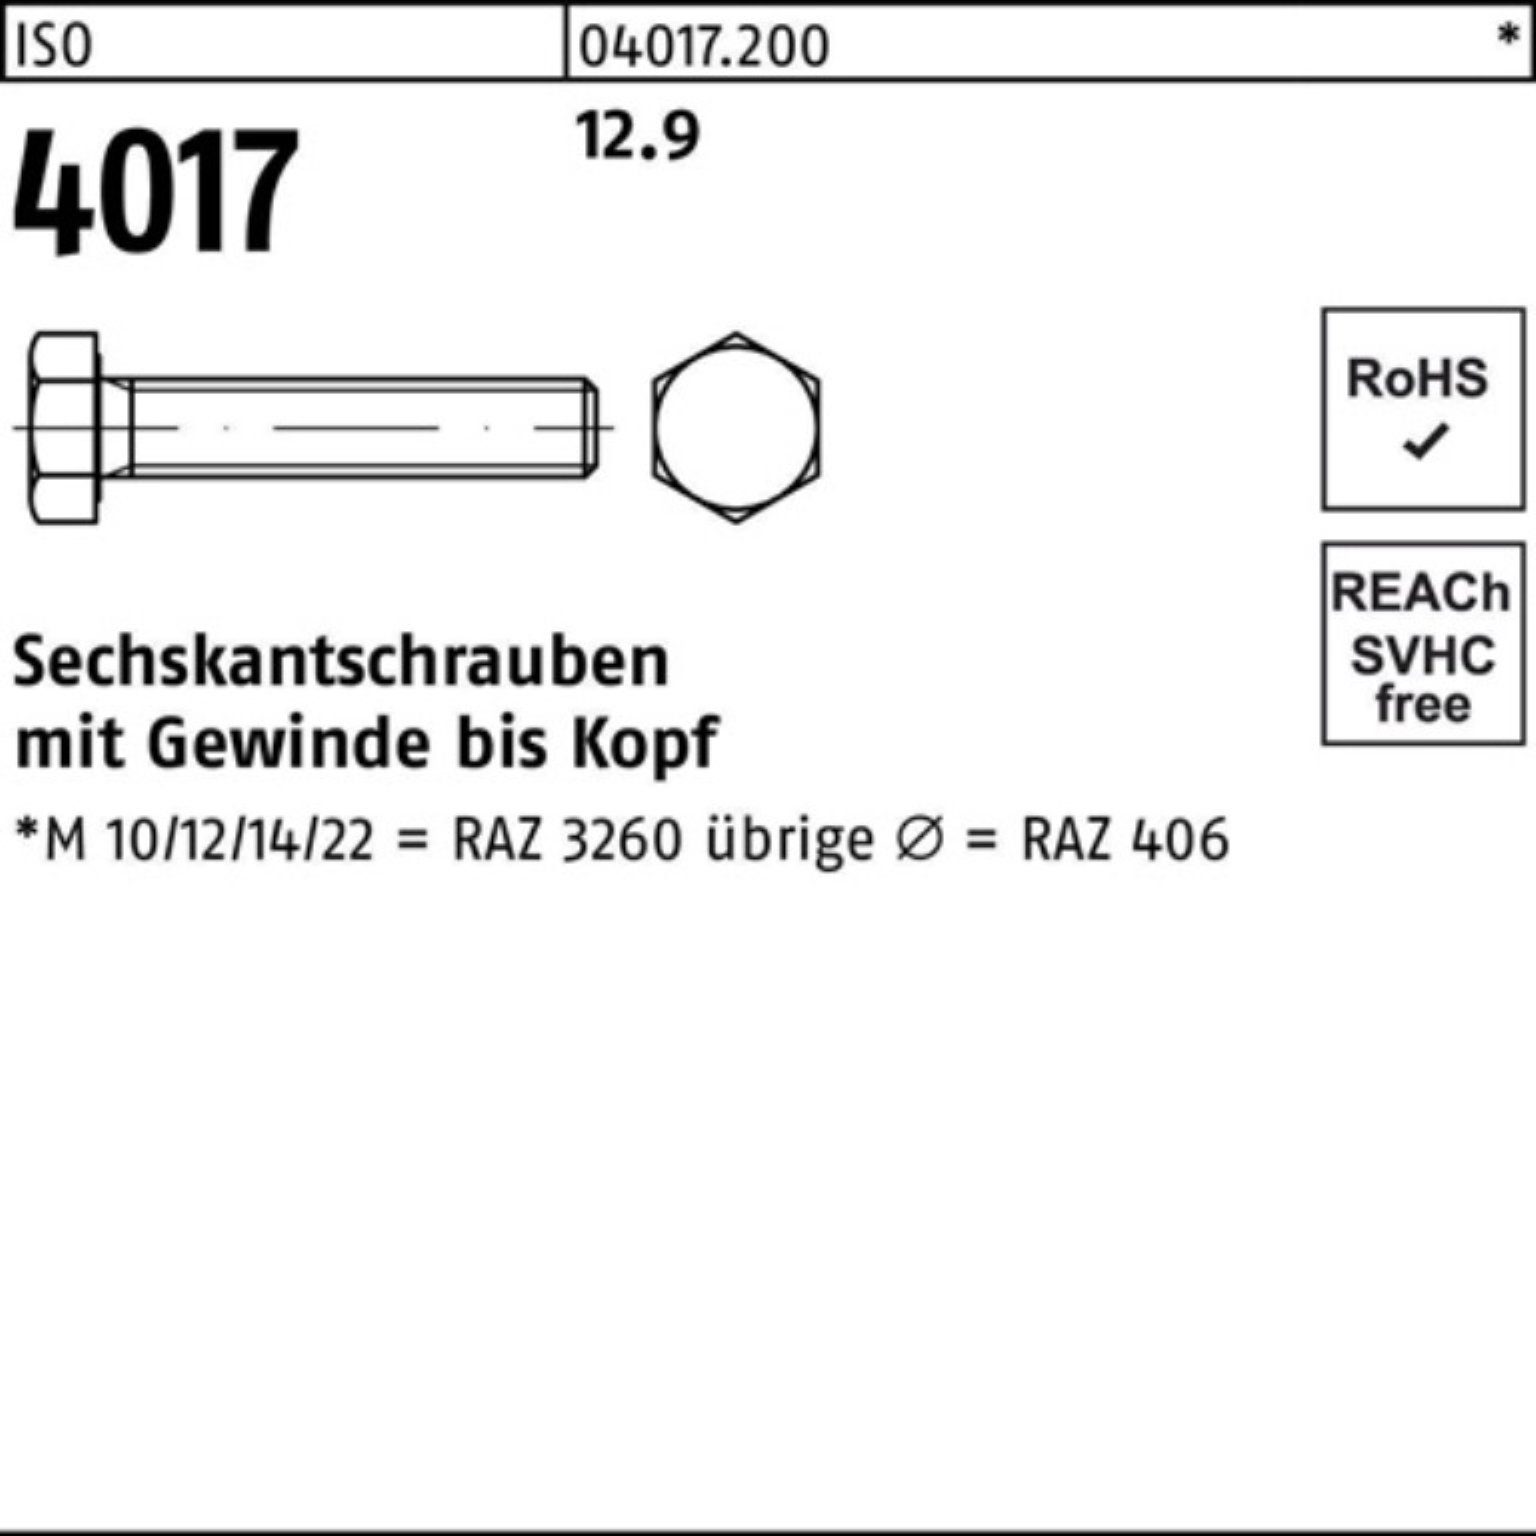 500 ISO Sechskantschraube M6x Stück 4017 Pack Sechskantschraube 12.9 20 500er VG Bufab ISO 40